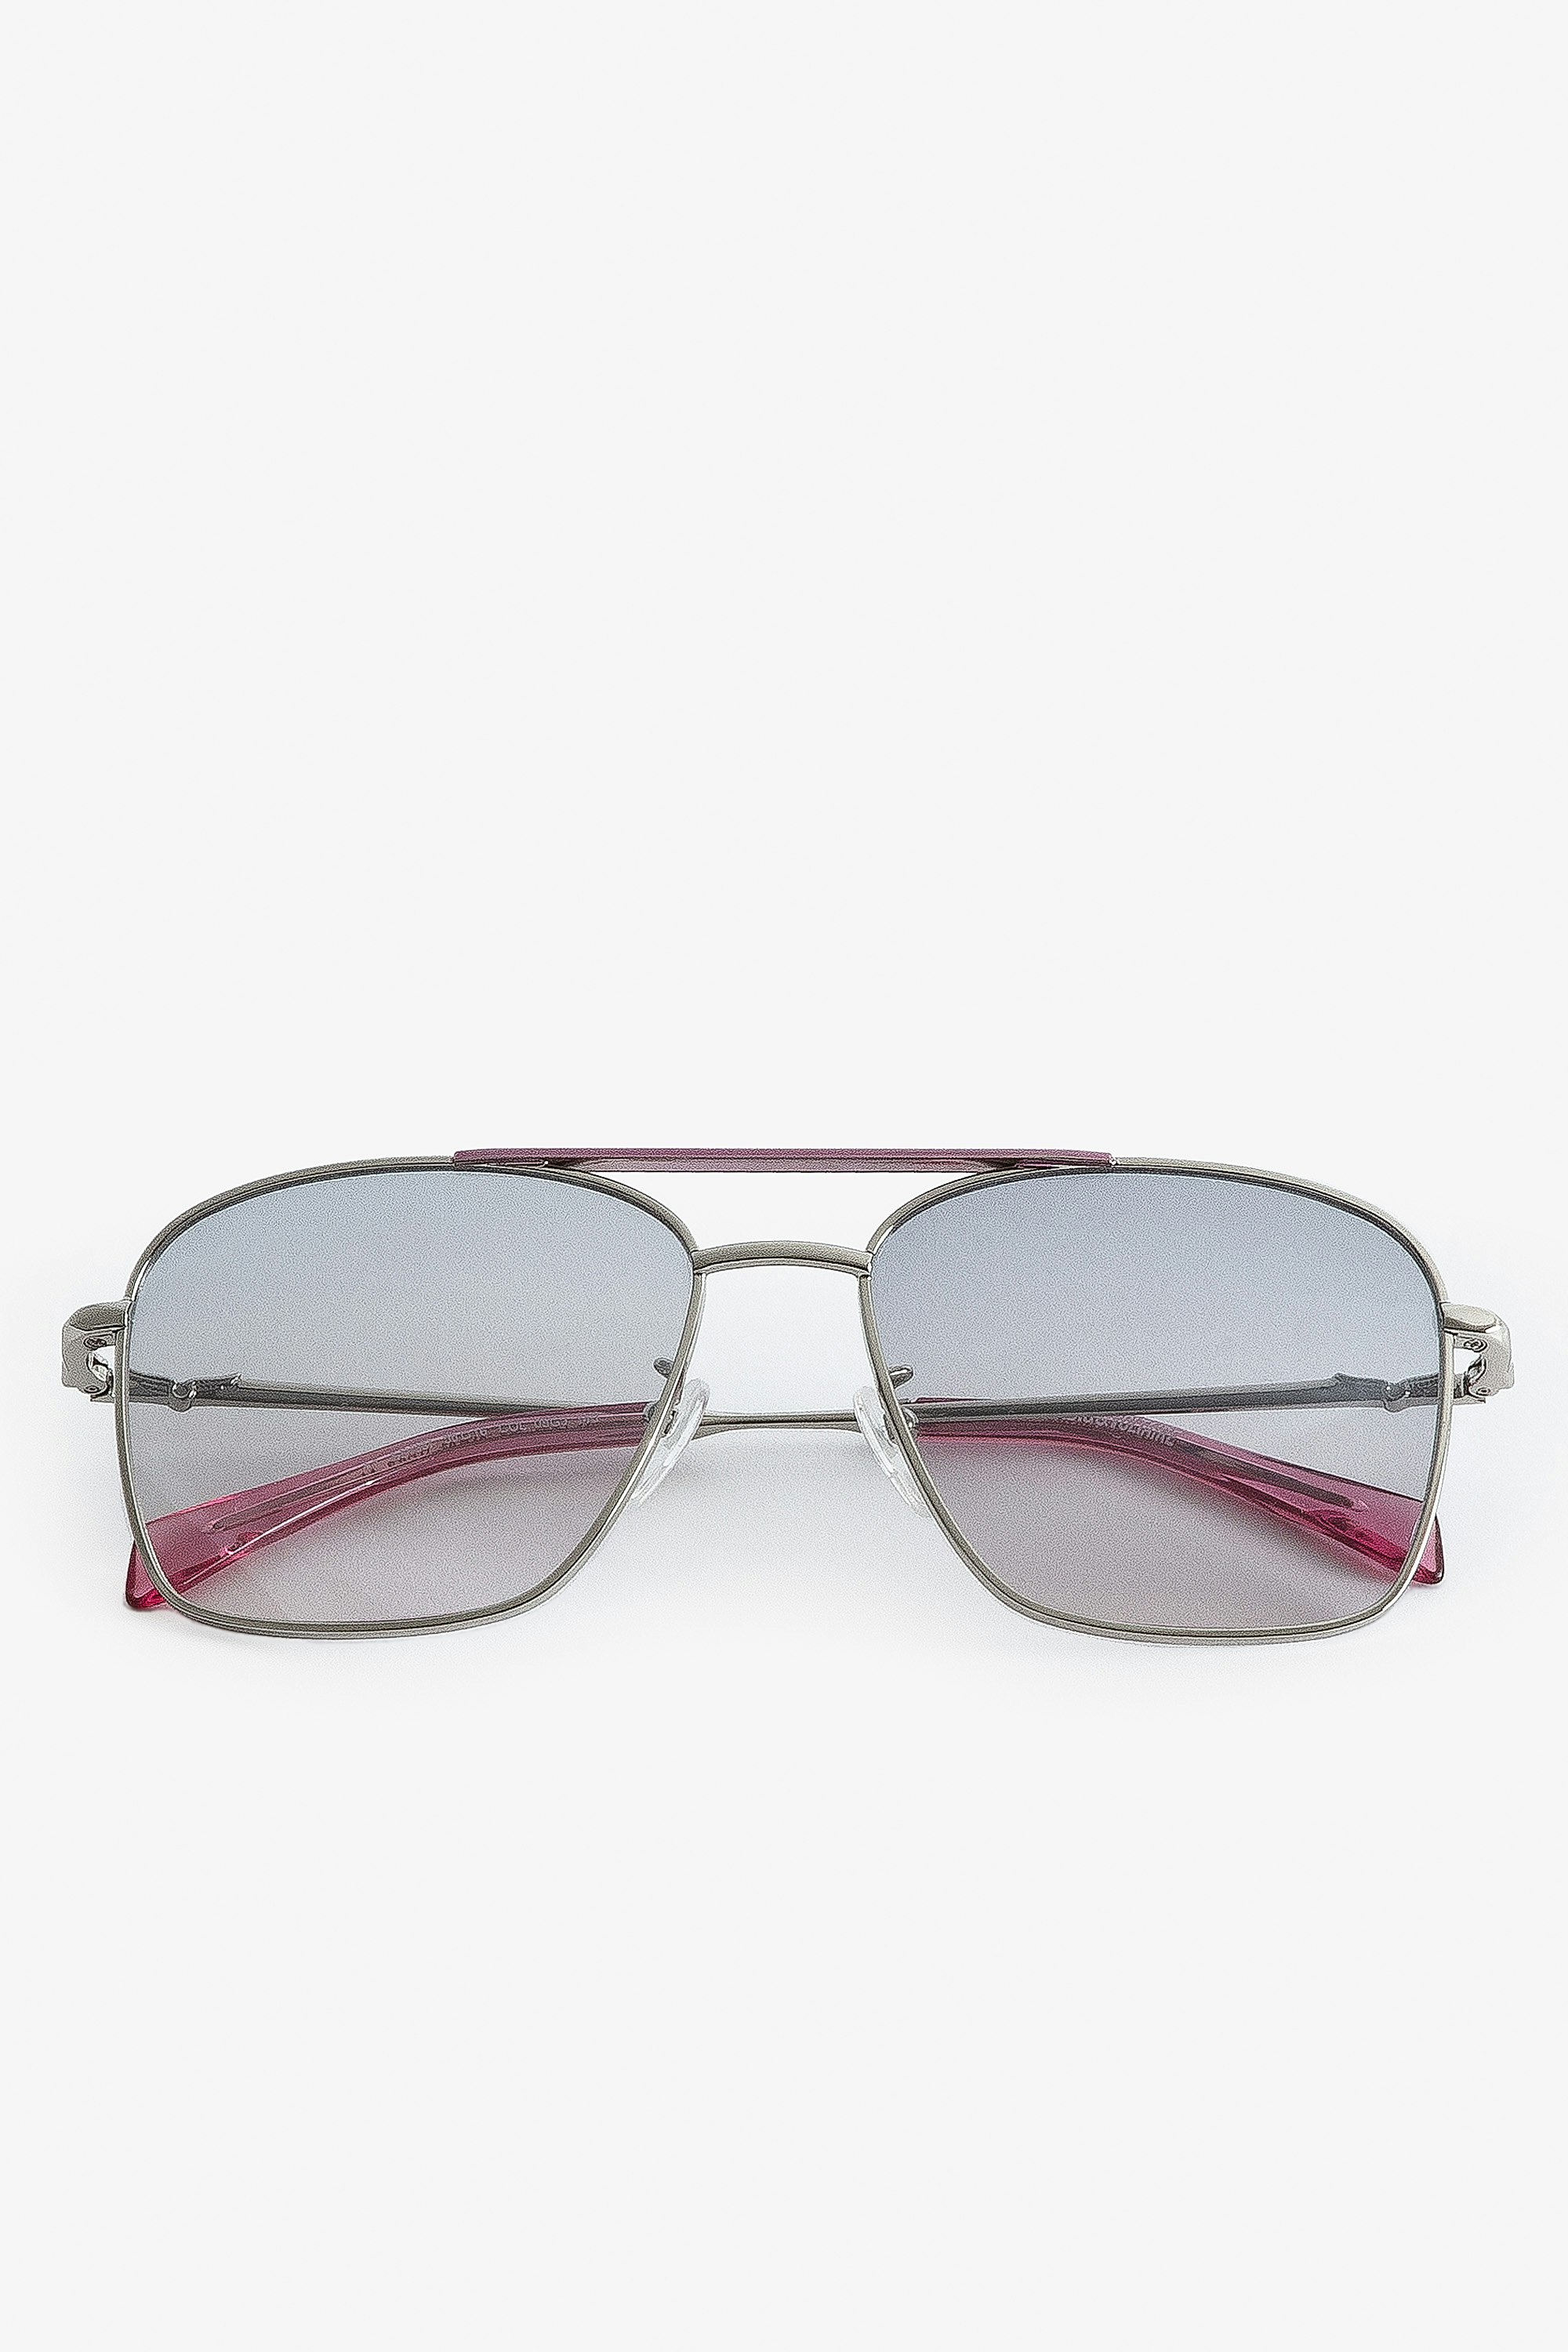 Gafas de sol Wings Aviator - Gafas de sol aviador unisex de metal rosa con cristales ahumados.